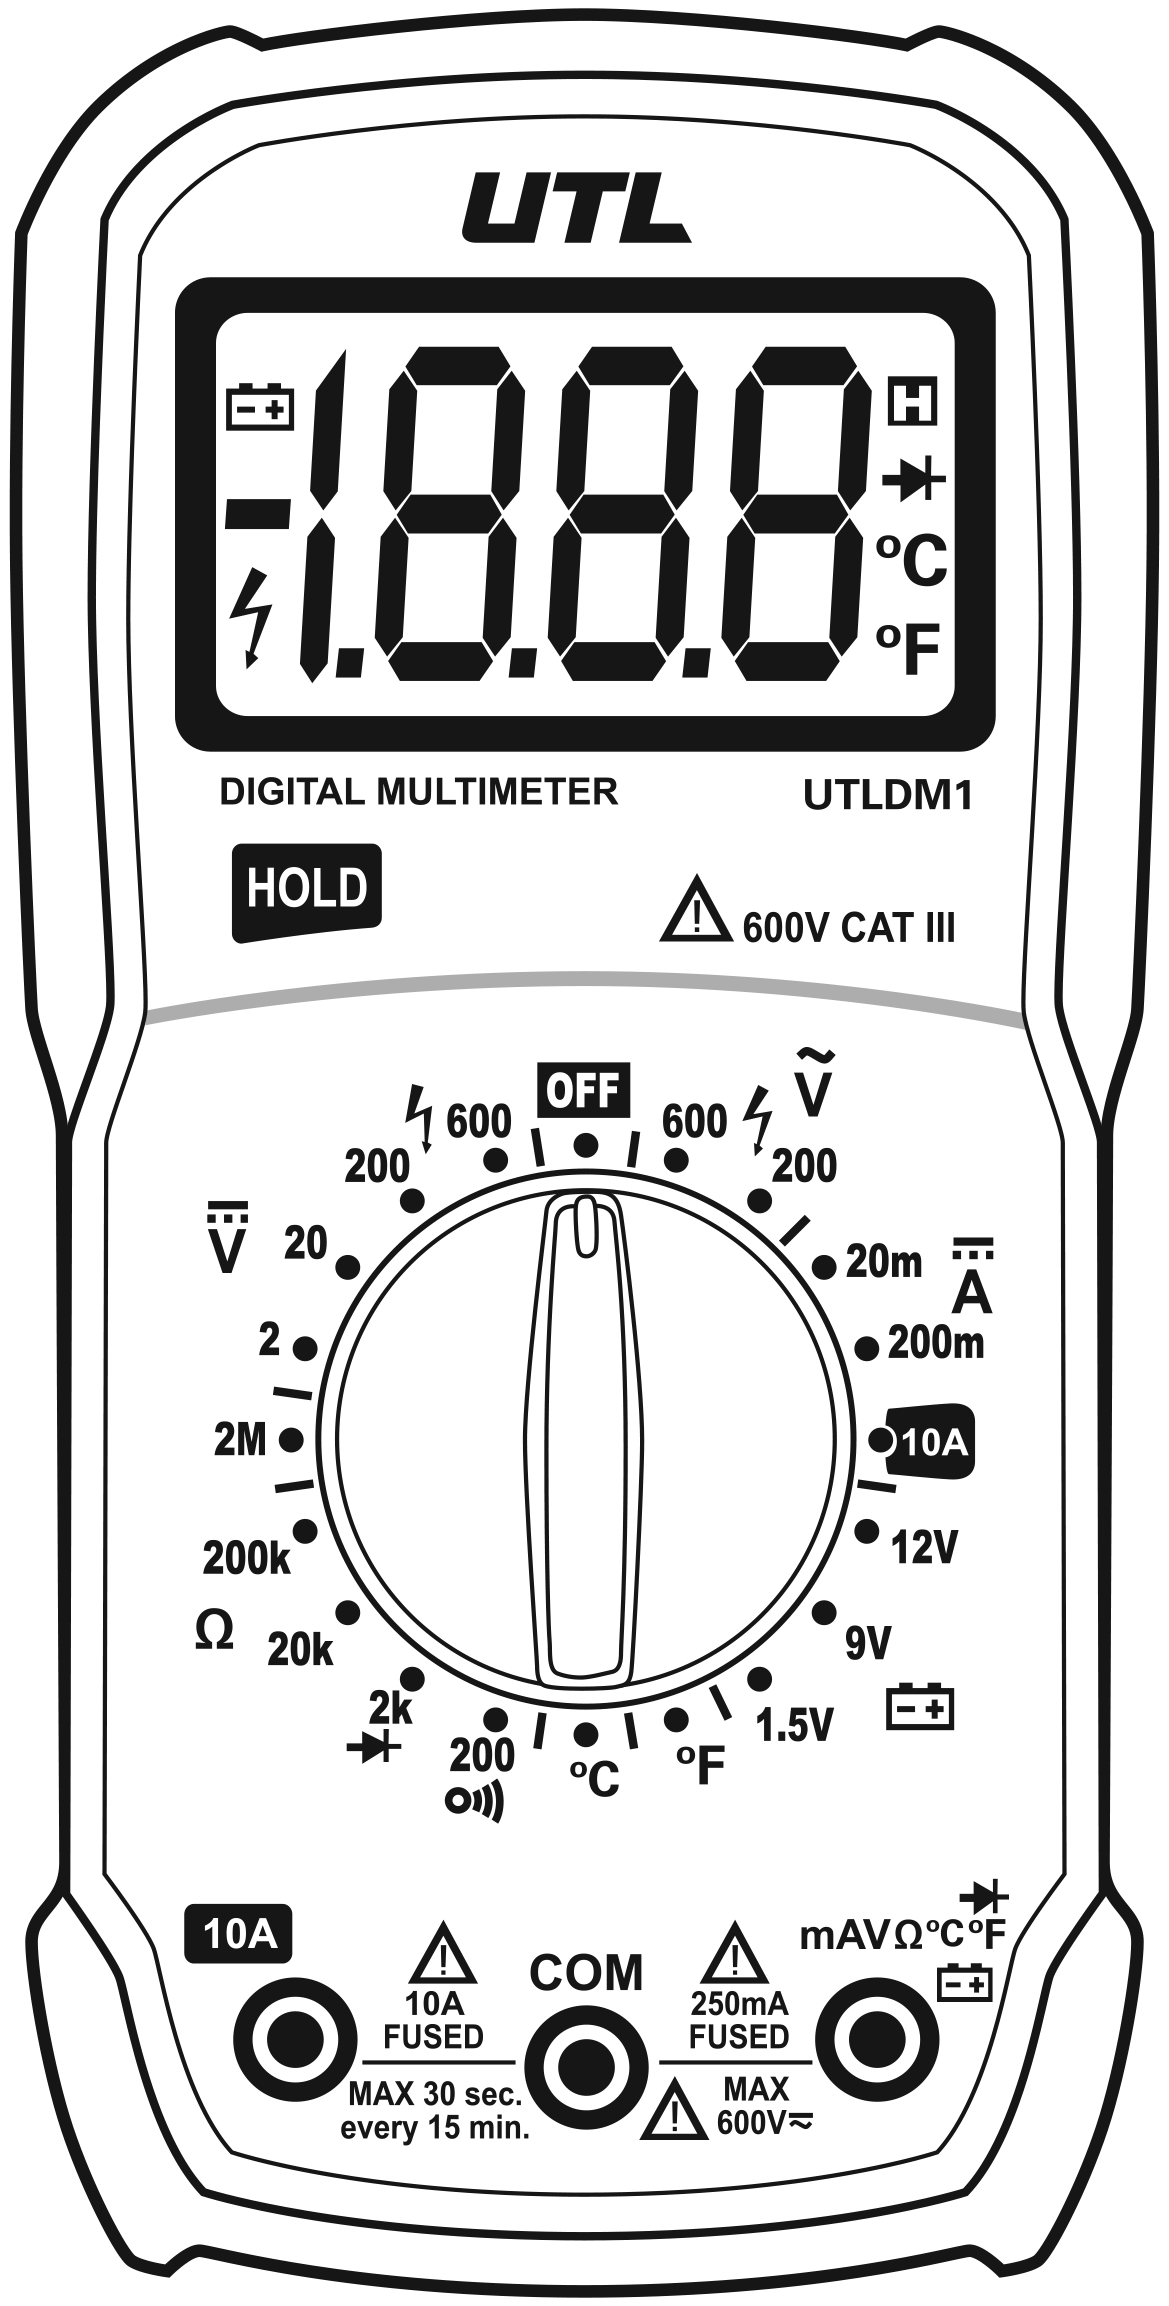 Manual Ranging Digital Multimeter - eTesters.com